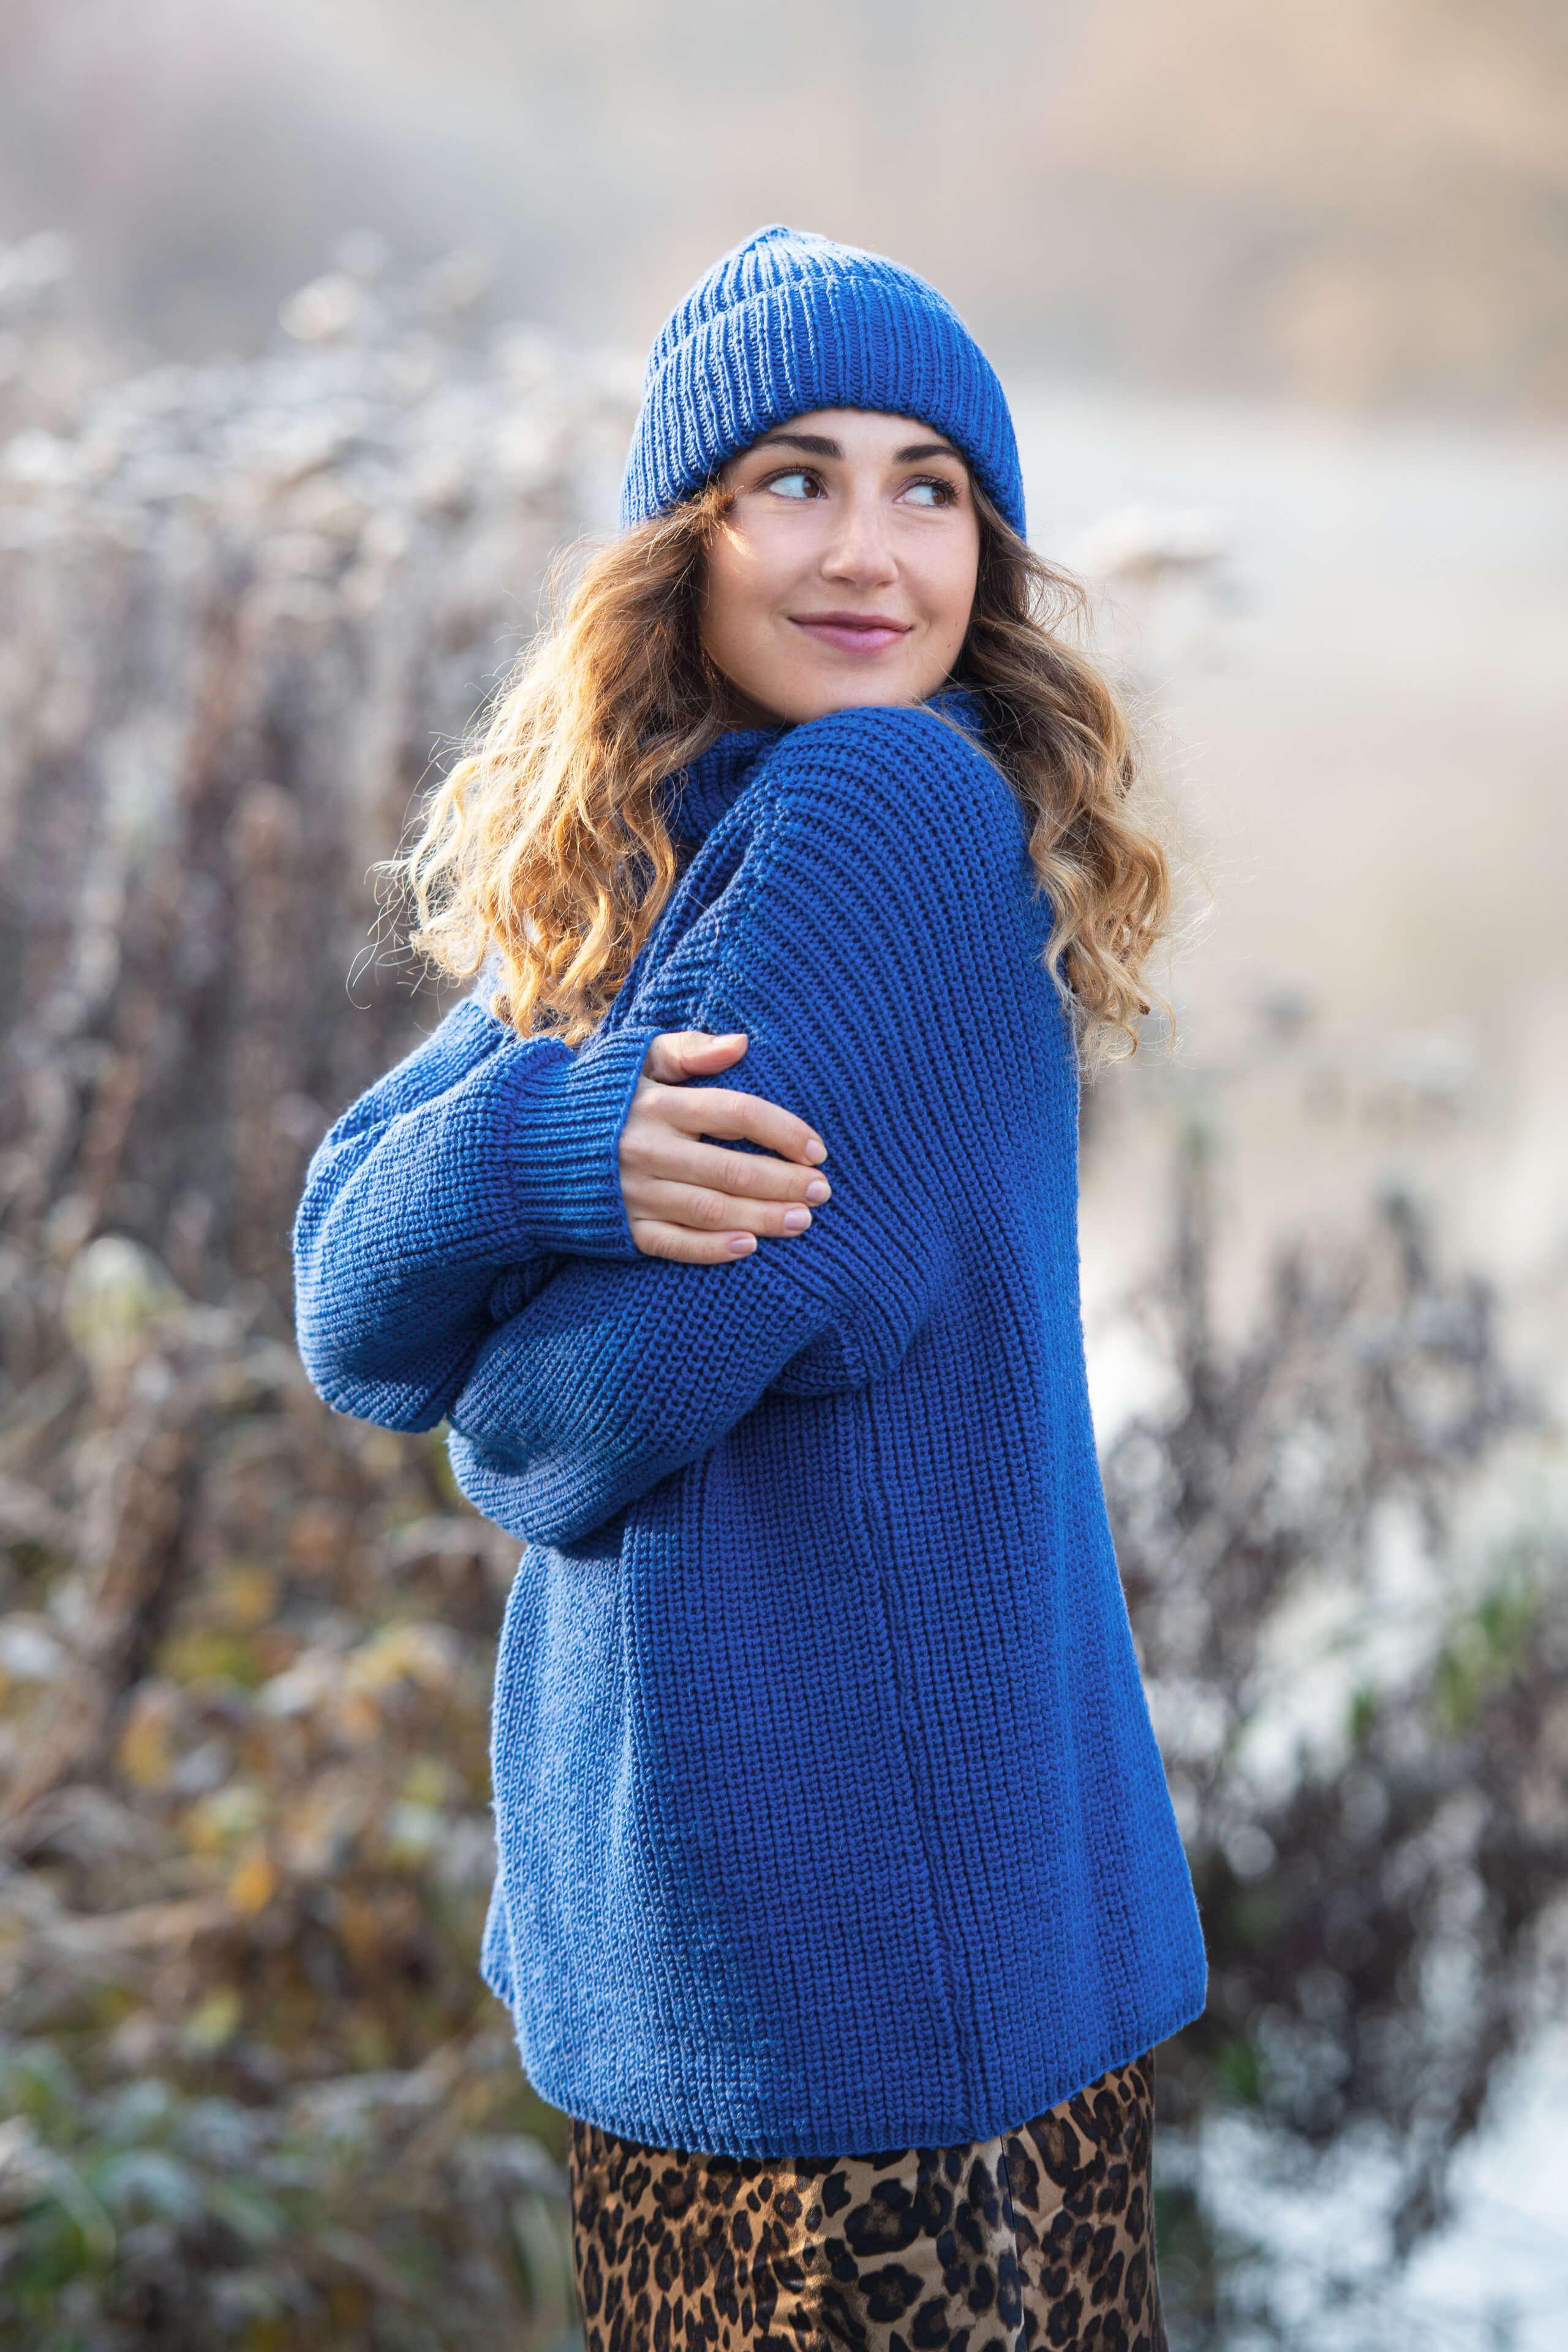 umschauende Frau mit royalblauem Pullover und passender Mütze in winterlciher Umgebung